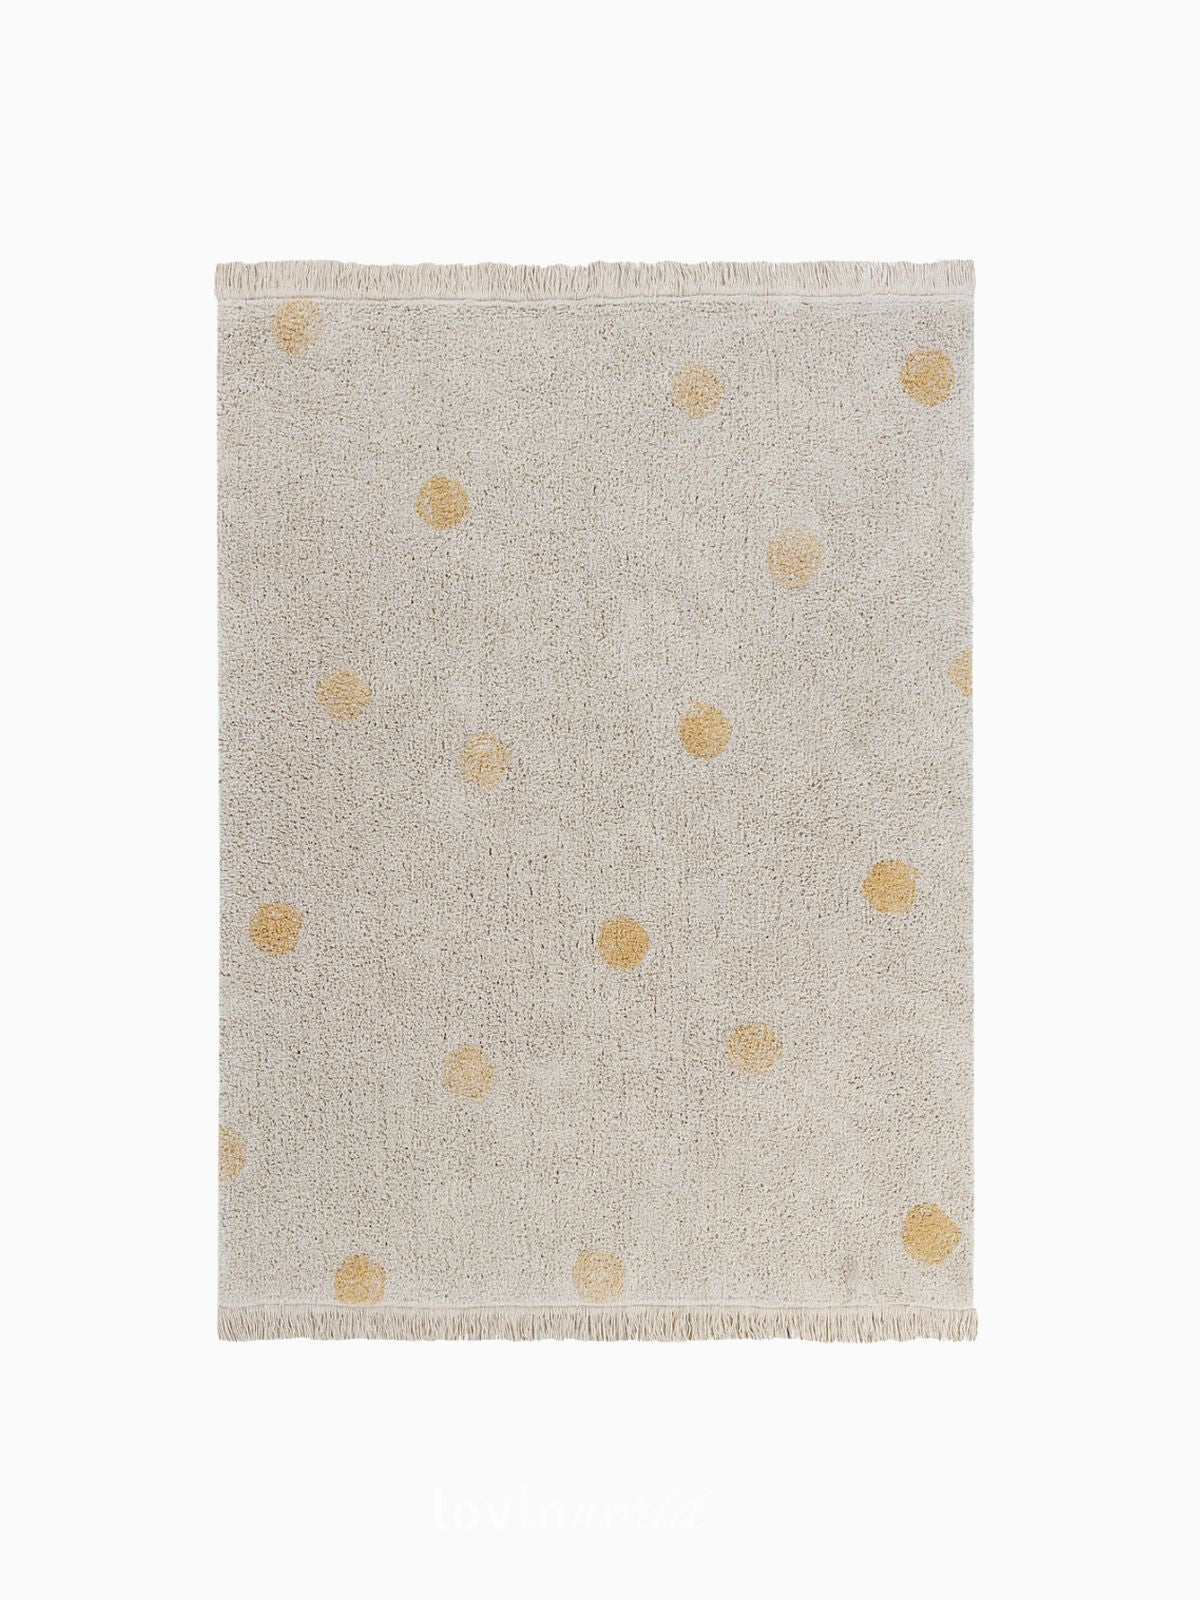 Tappeto in cotone lavabile Hippy Dots Naturale/Miele, 120x160 cm.-1